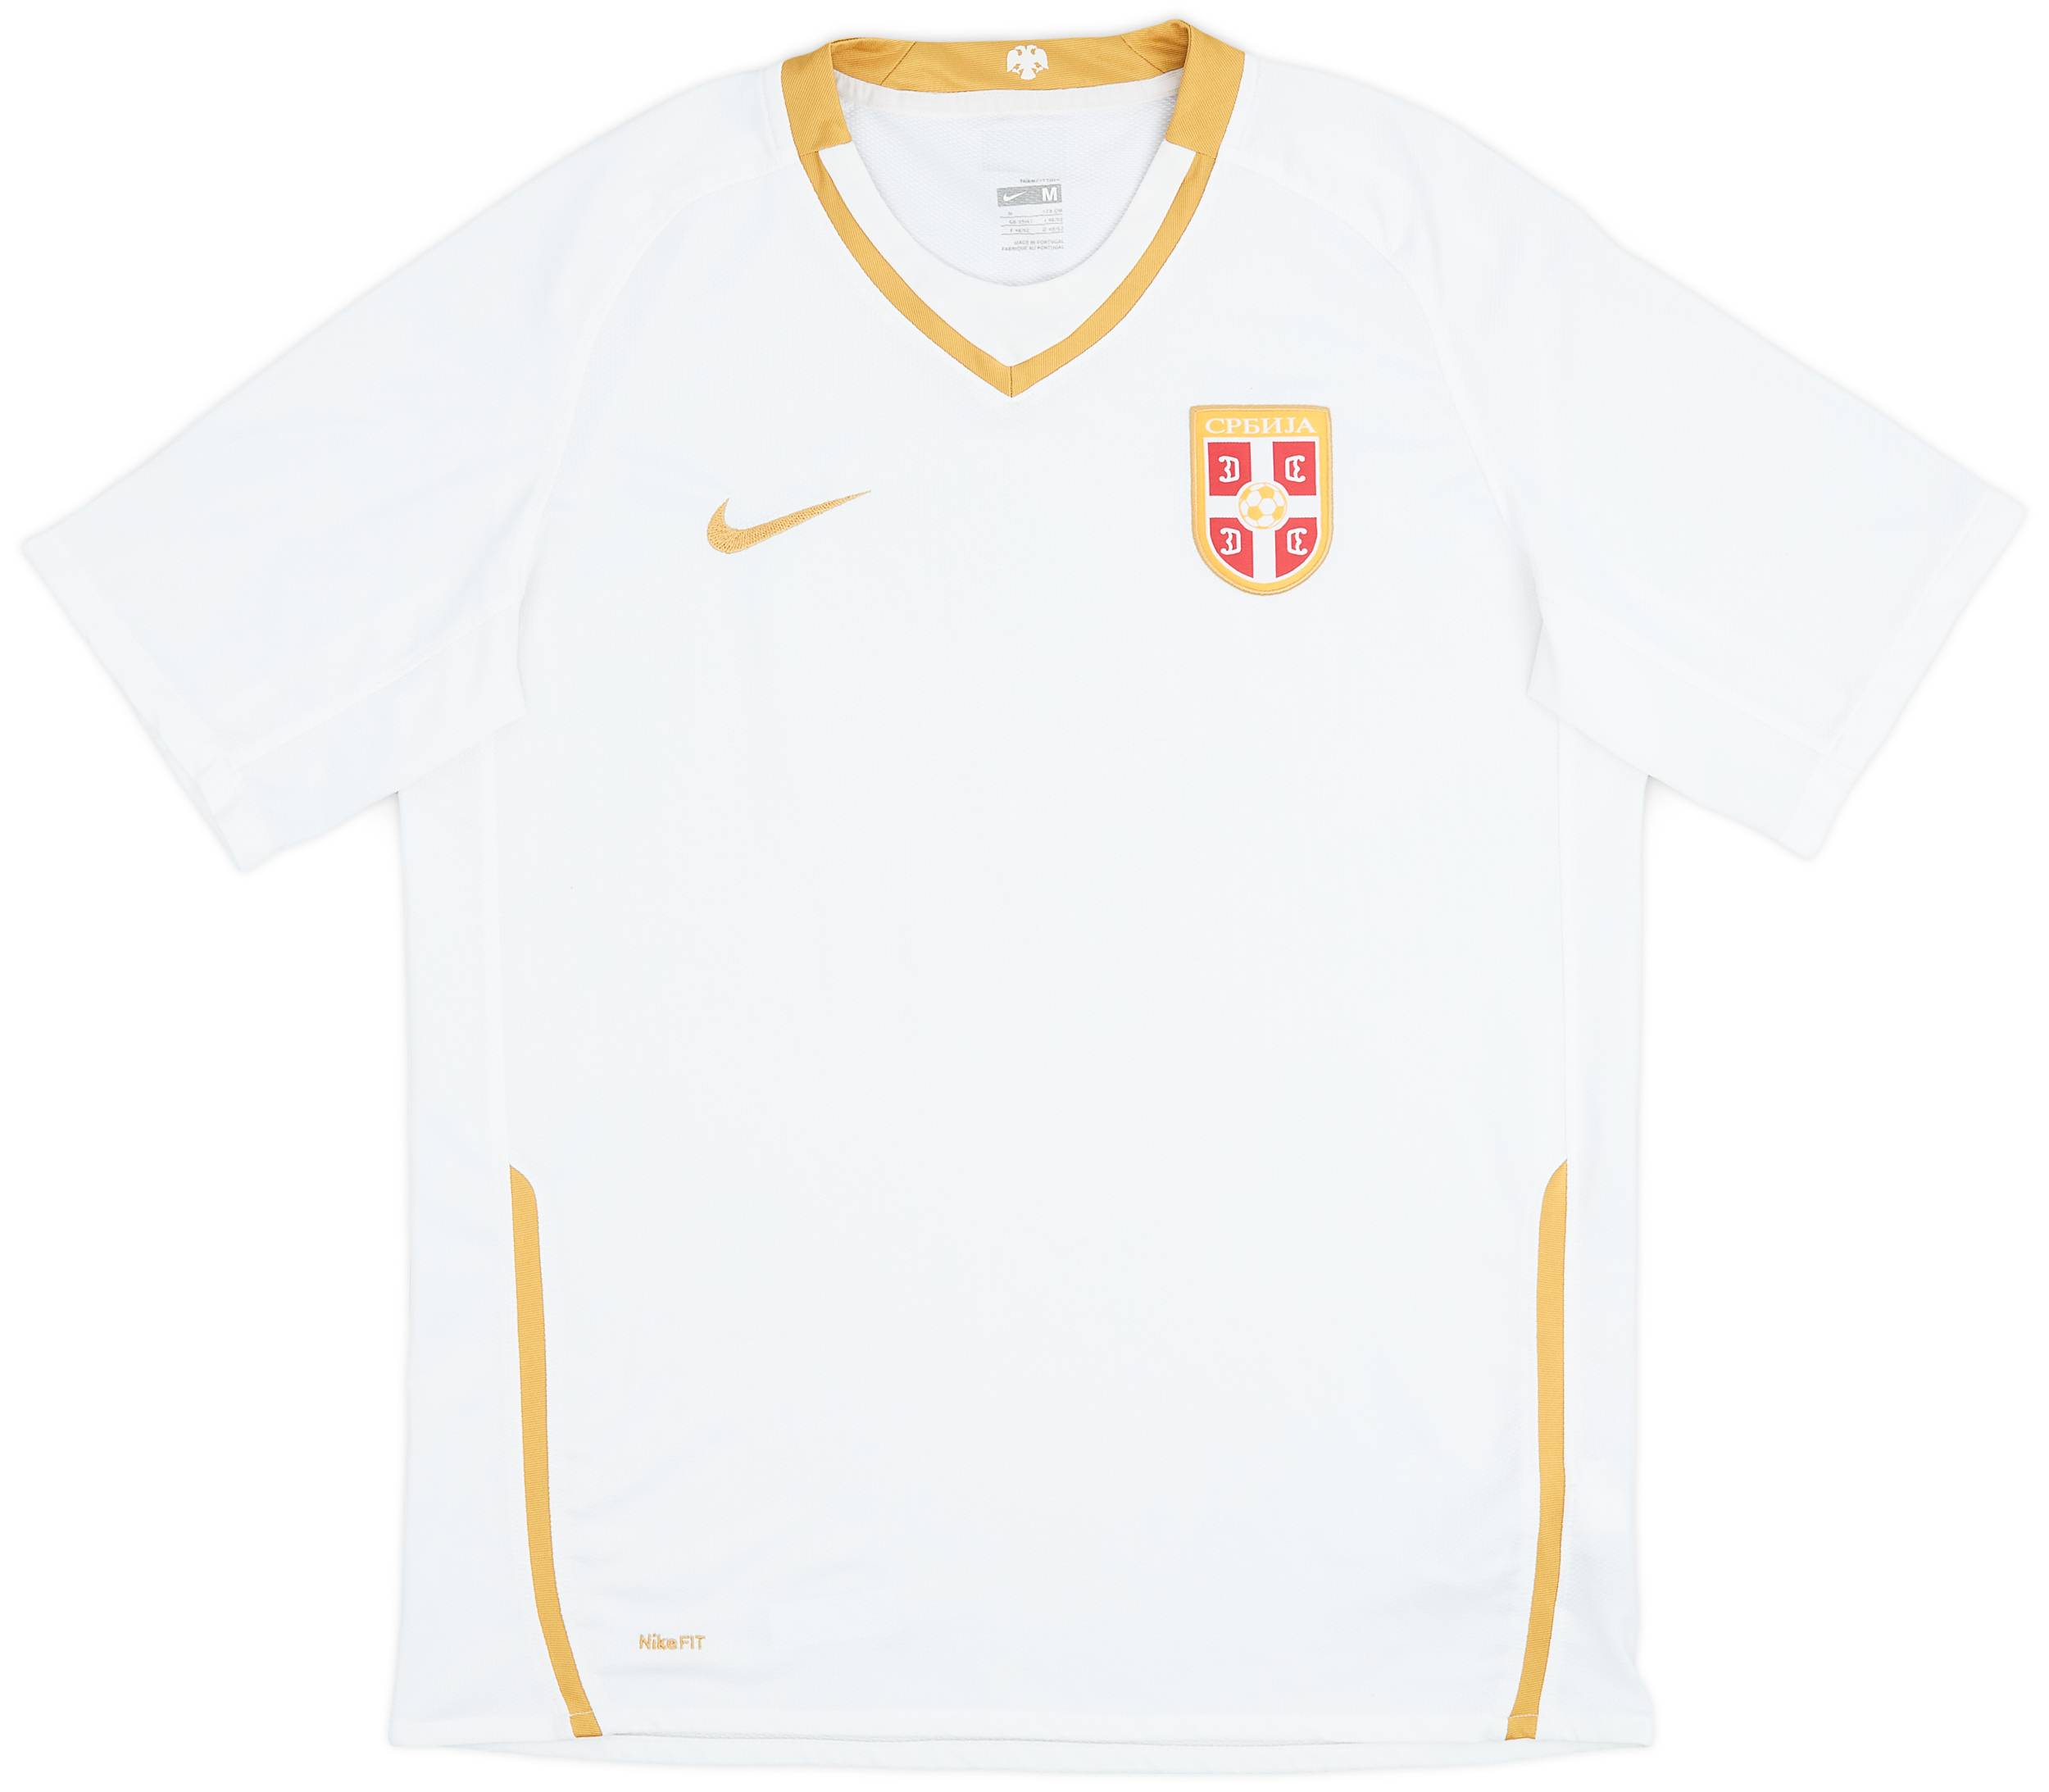 2008-10 Serbia Away Shirt - 9/10 - (M)